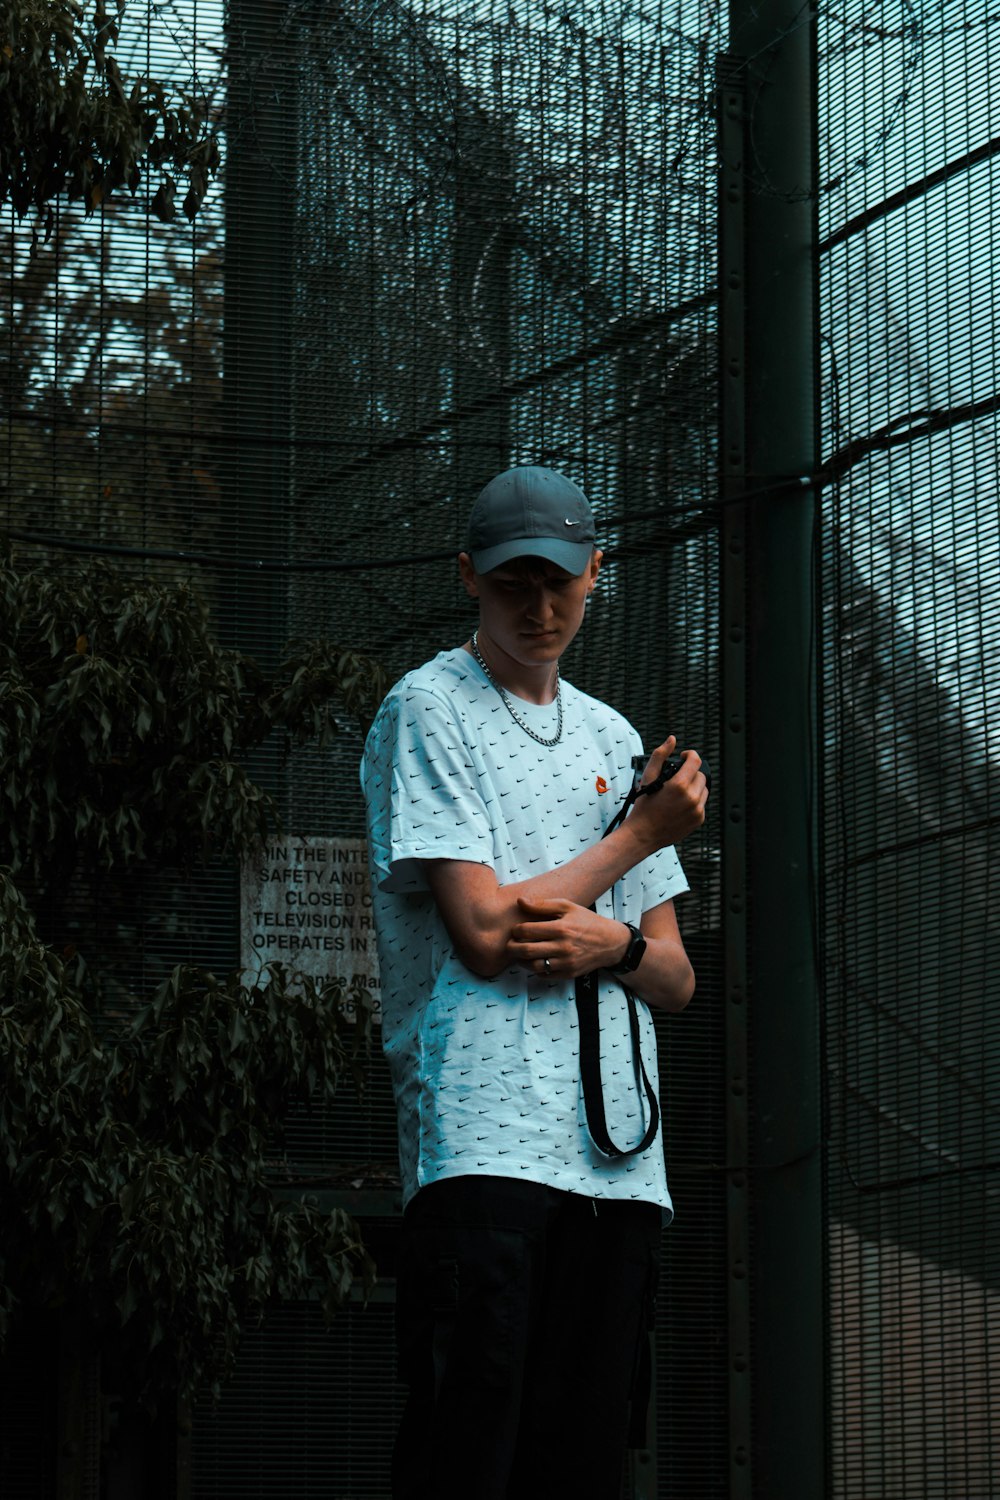 Un uomo che tiene una racchetta da tennis in cima a un campo da tennis